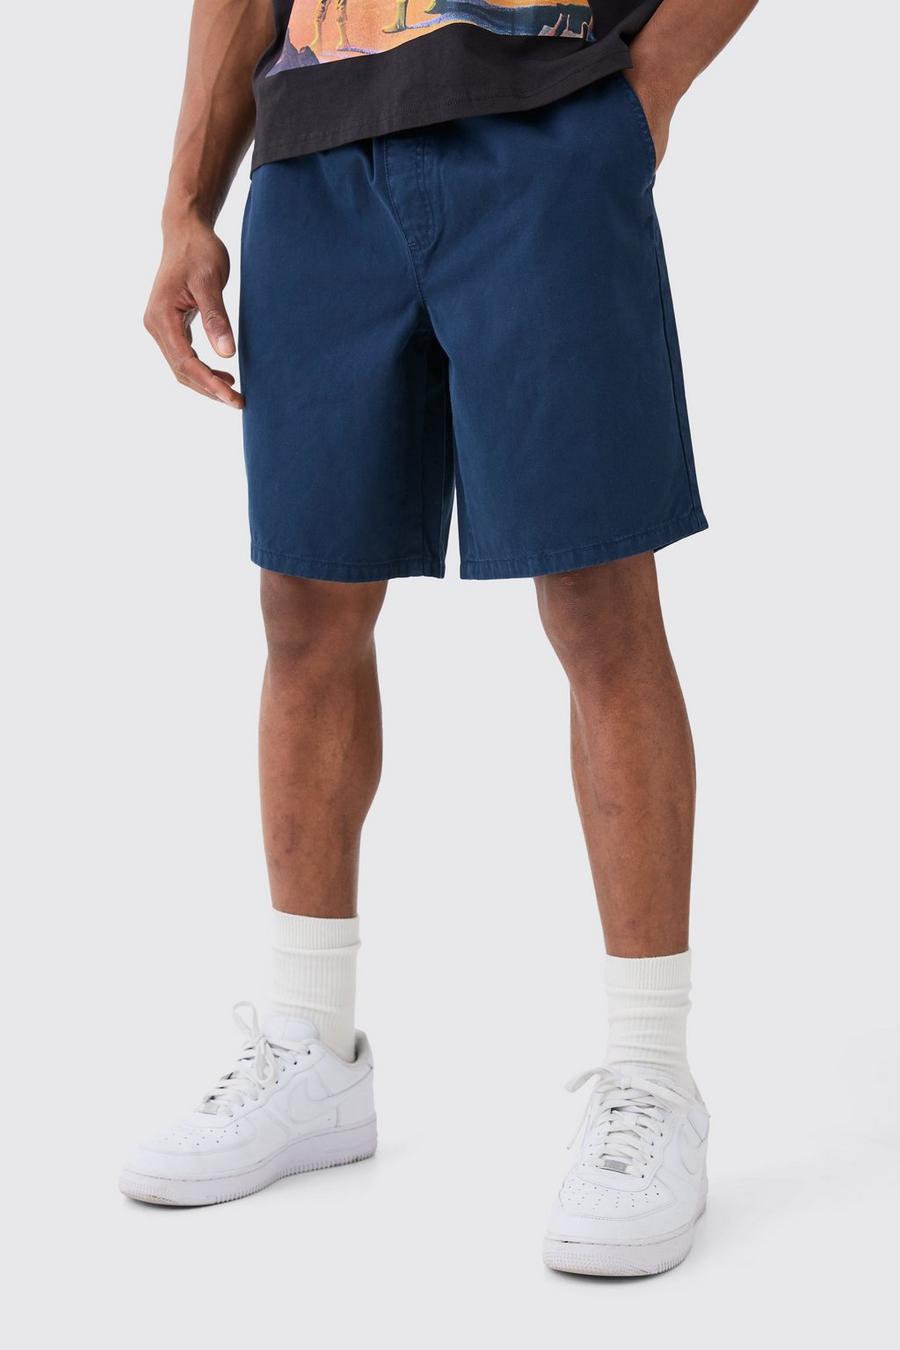 Pantalón corto holgado Everyday en azul marino, Navy